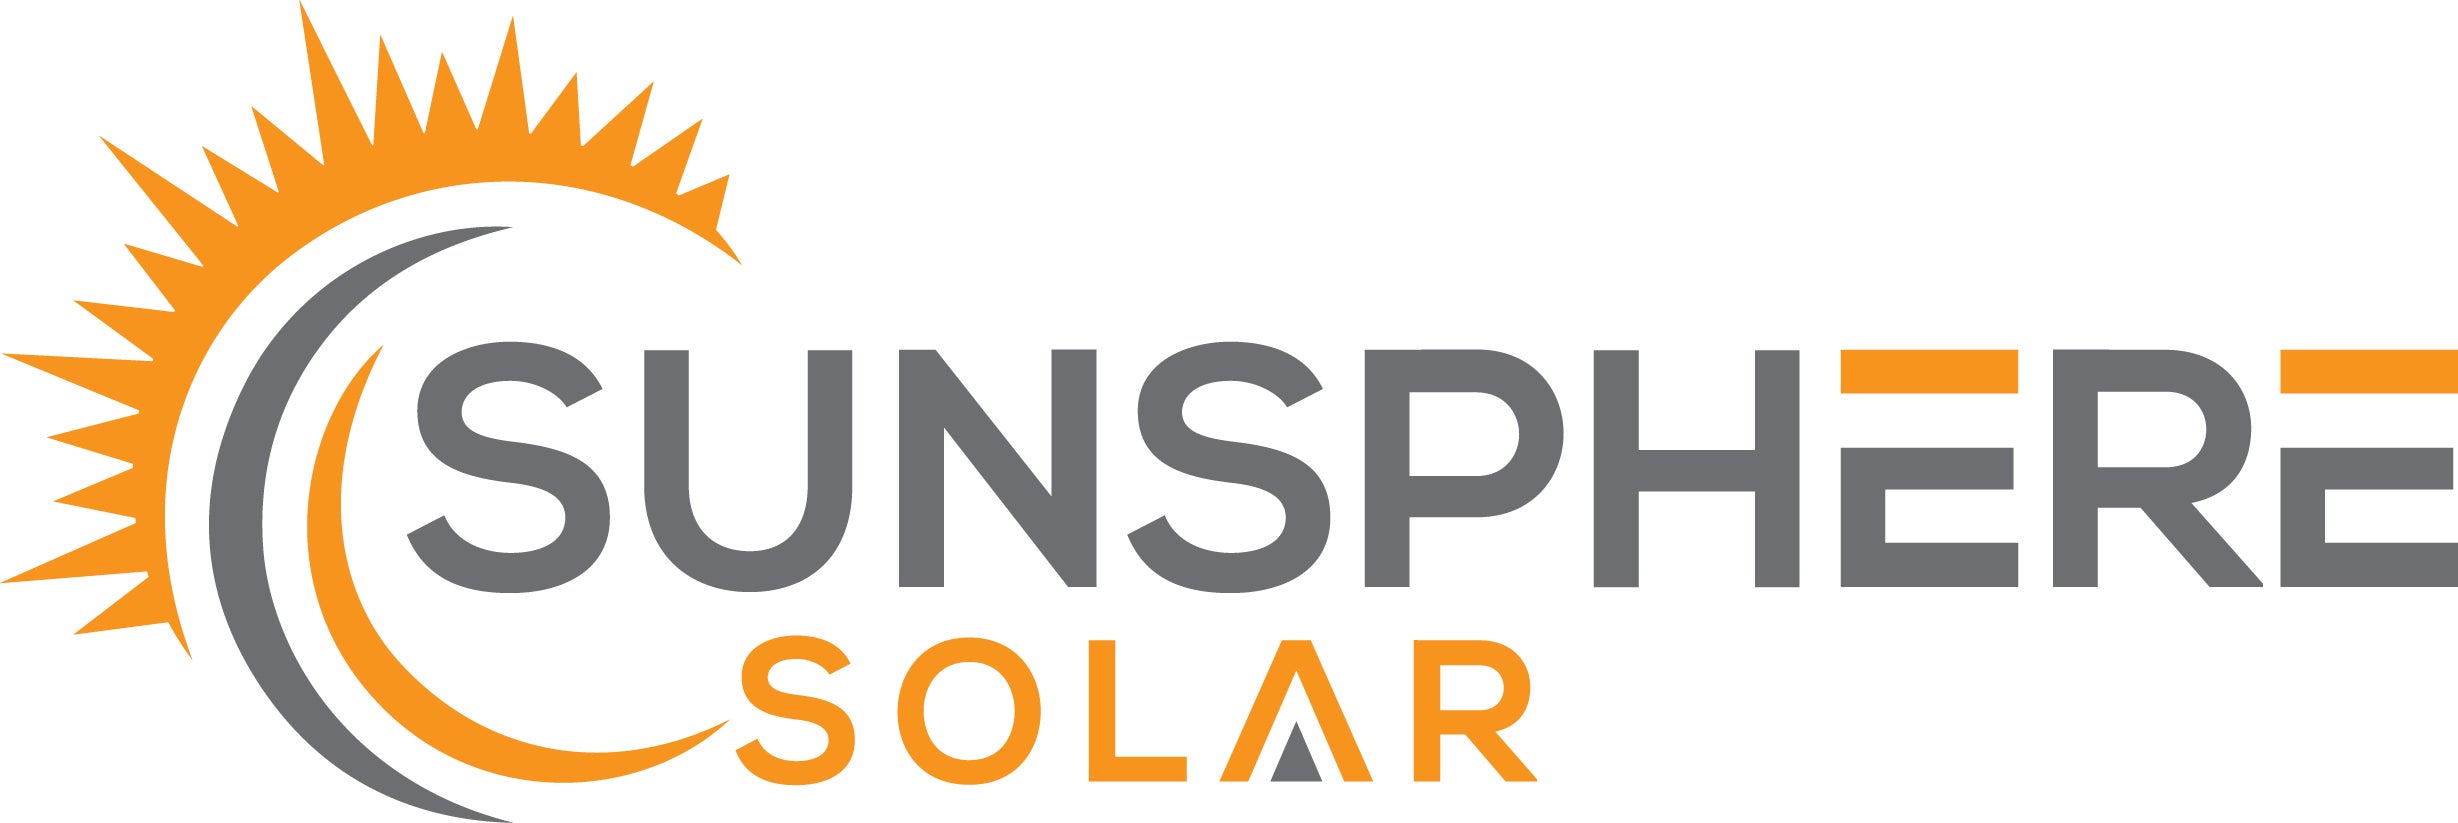 Sunsphere Solar logo